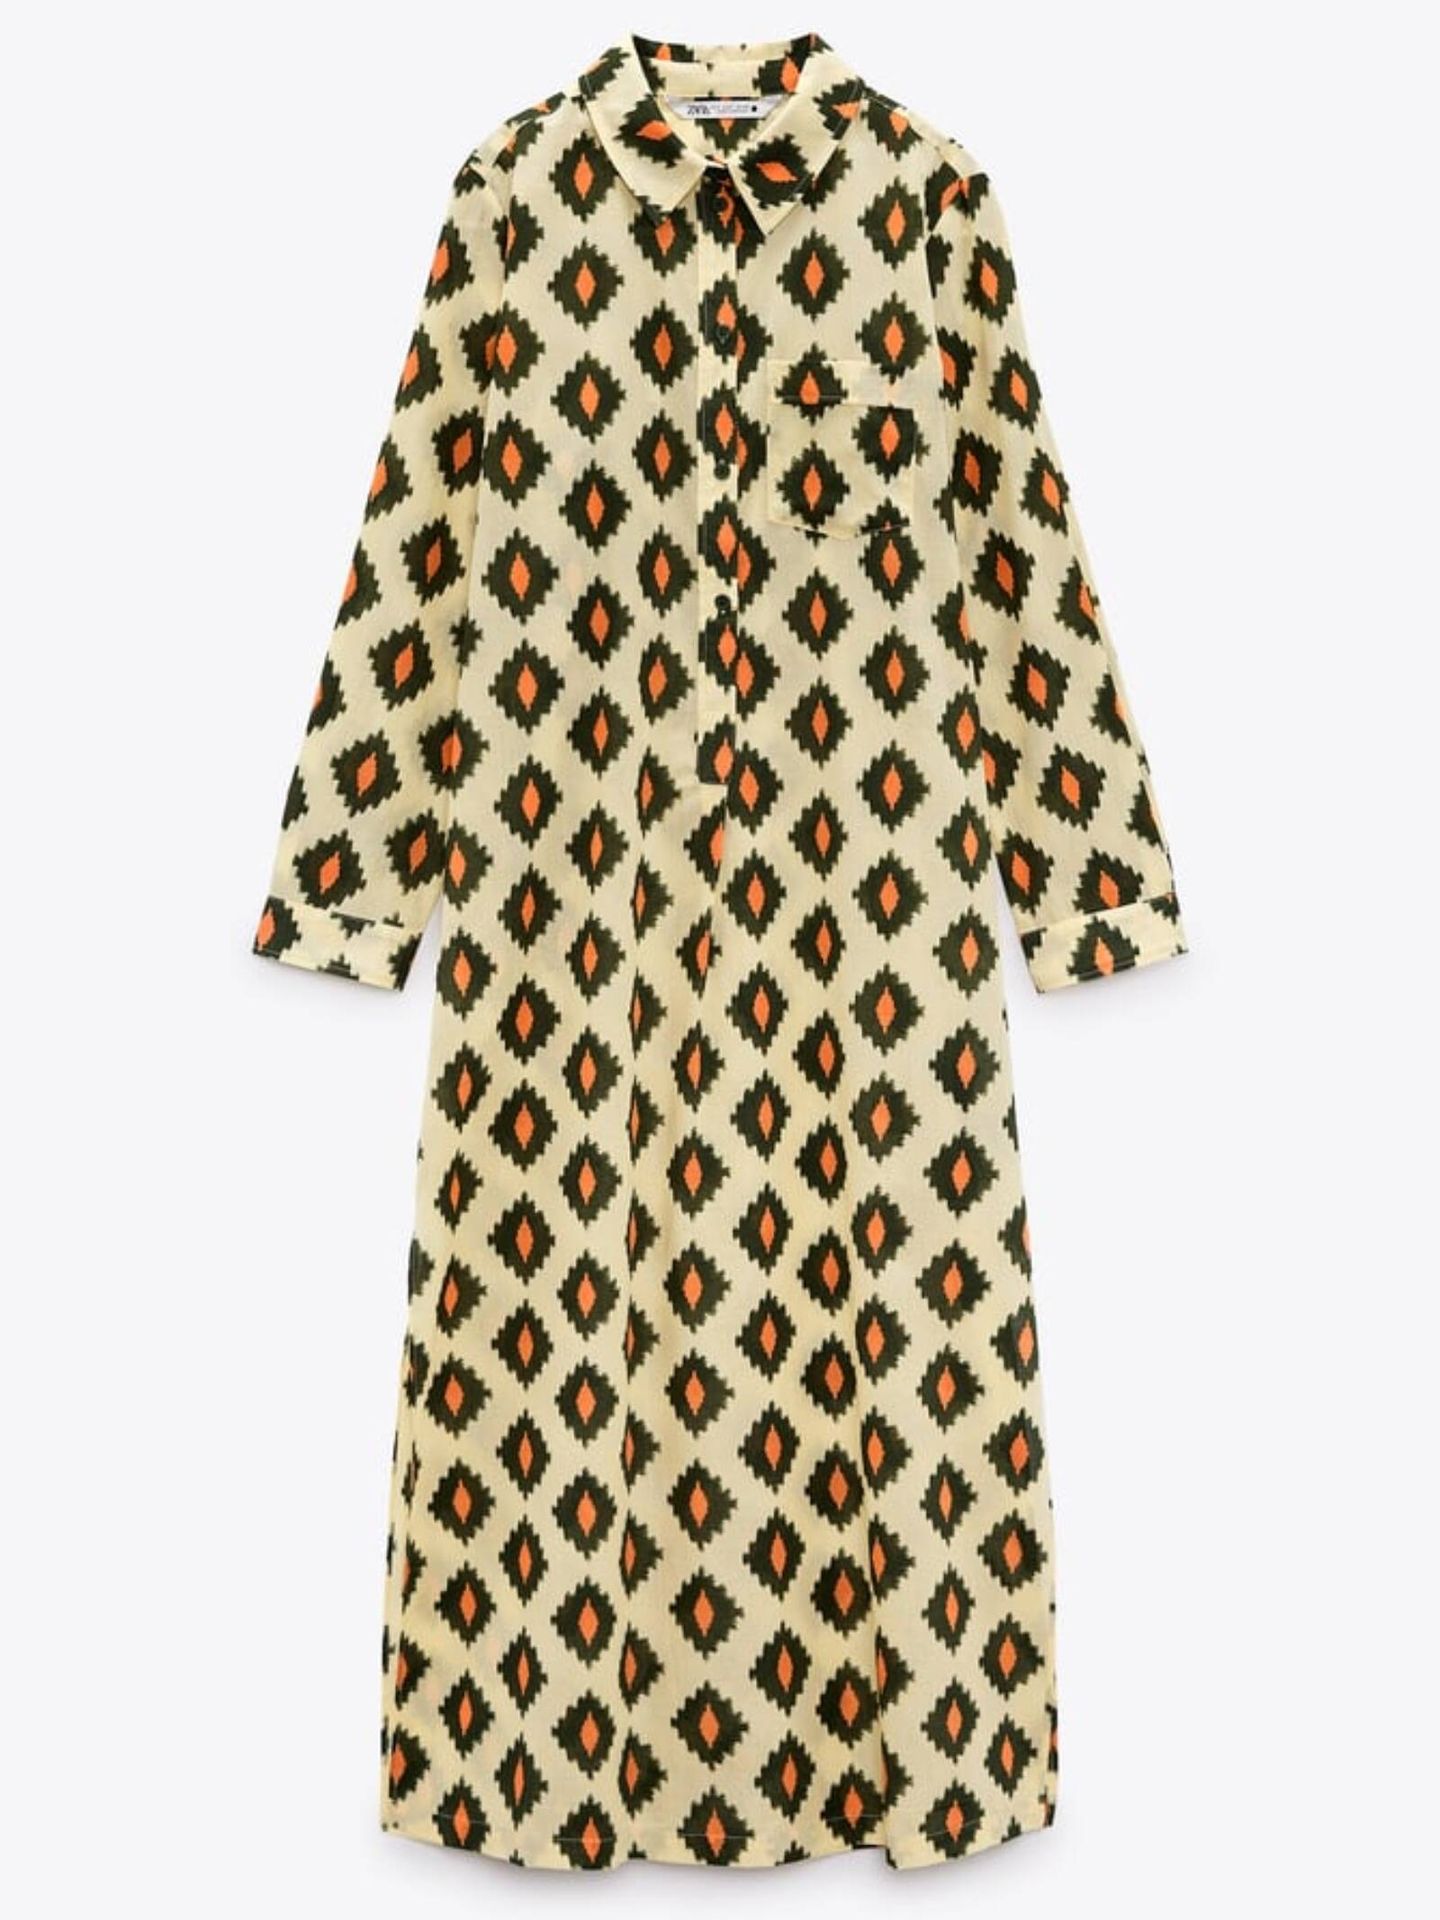 10 nuevos vestidos low cost para primavera. (Zara/Cortesía)